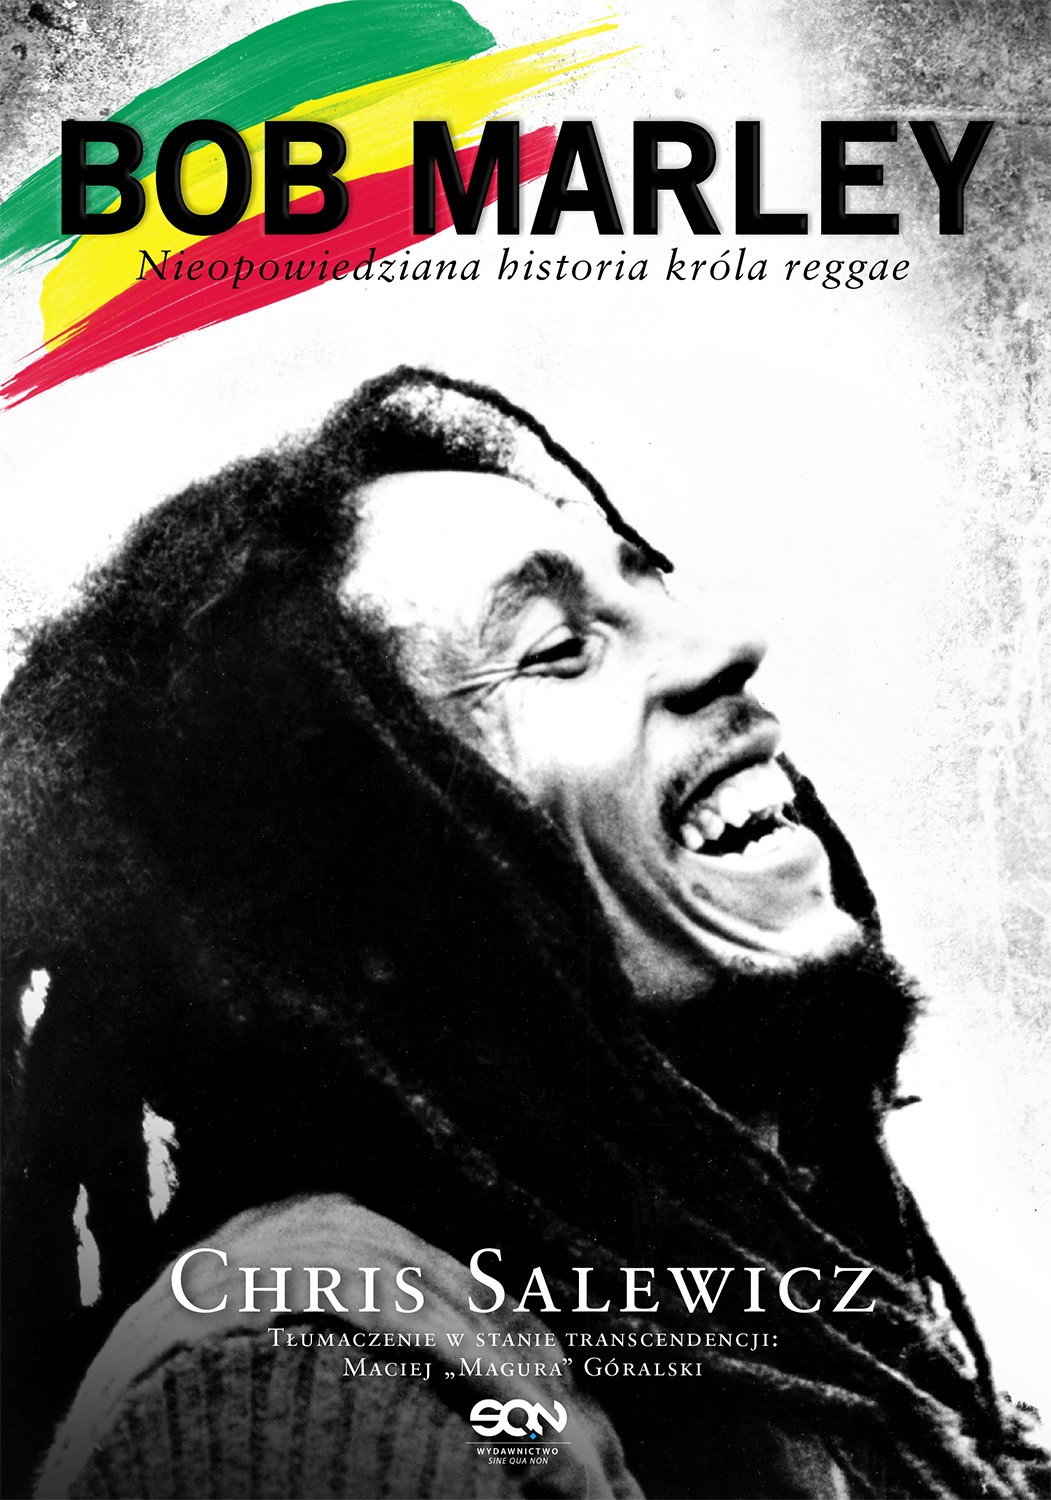 Bob Marley. Nieopowiedziana historia króla reggae (Bob Marley. The Untold Story) - Chris Salewicz, Wydawnictwo Sine Qua Non, 2013